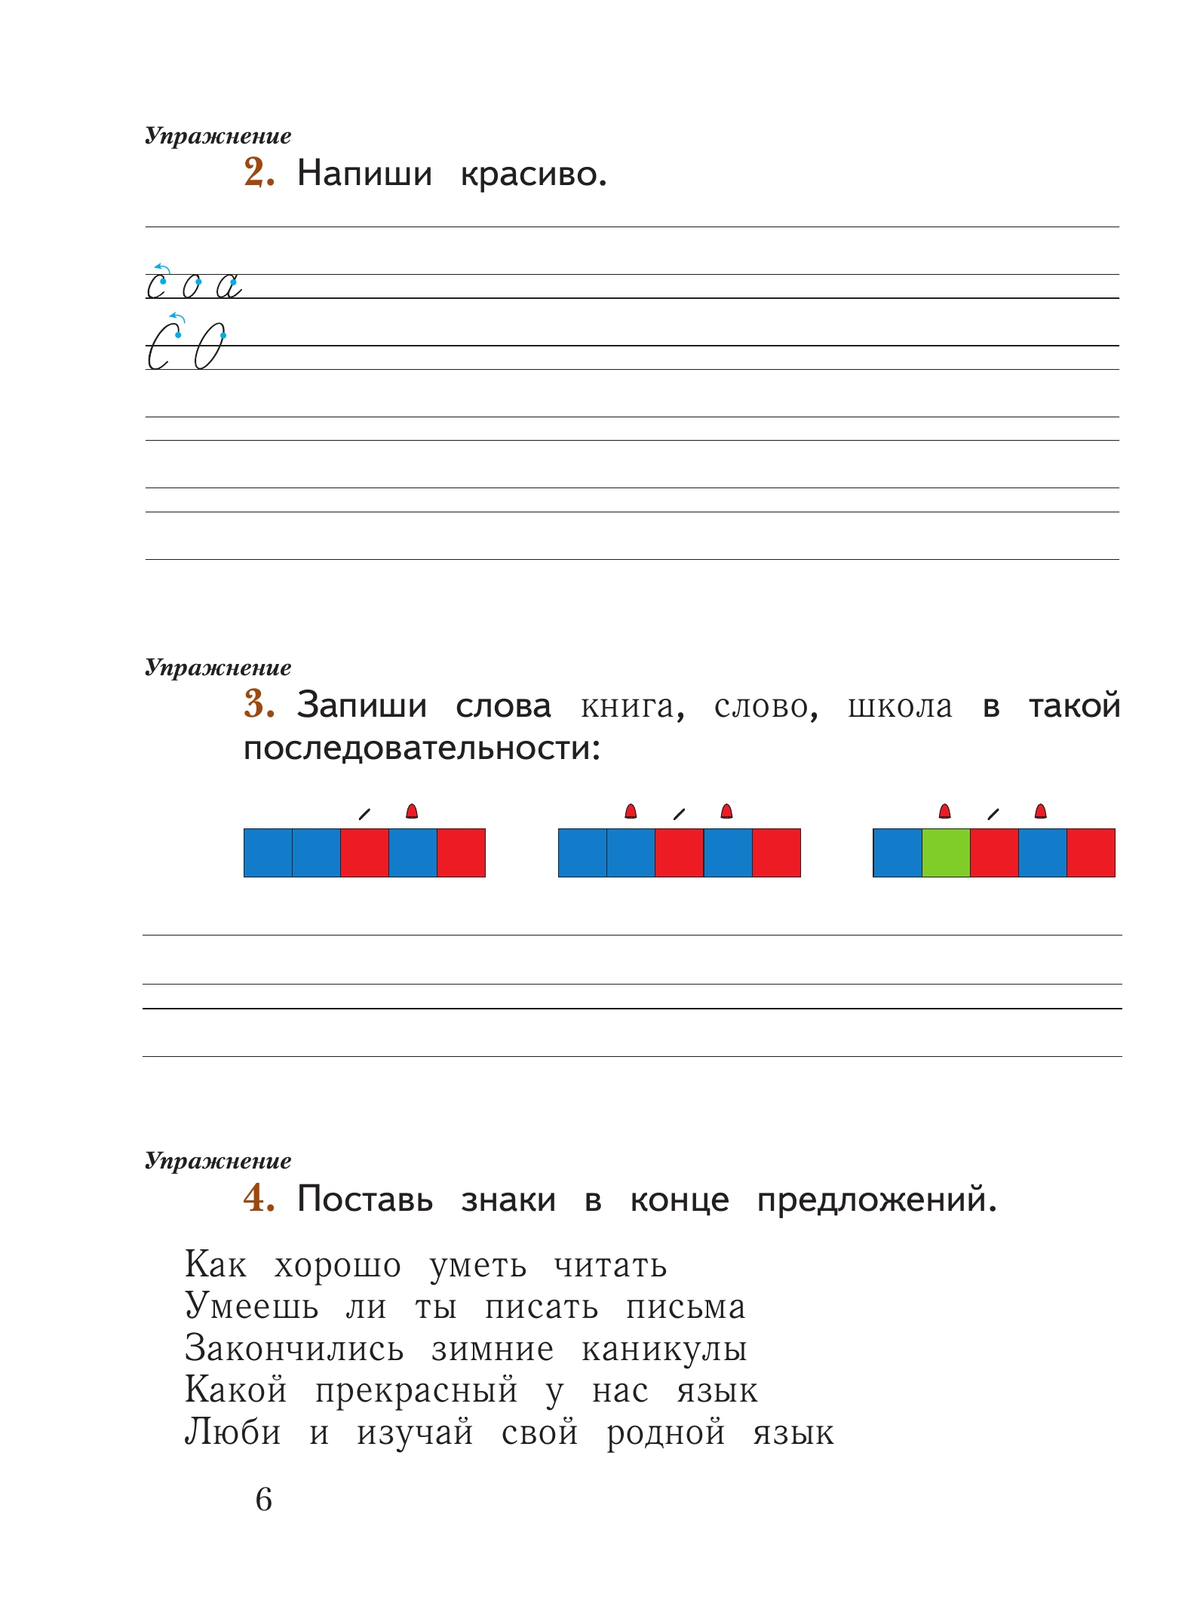 Русский язык. 1 класс. Рабочая тетрадь. В 2 частях. Часть 1 11